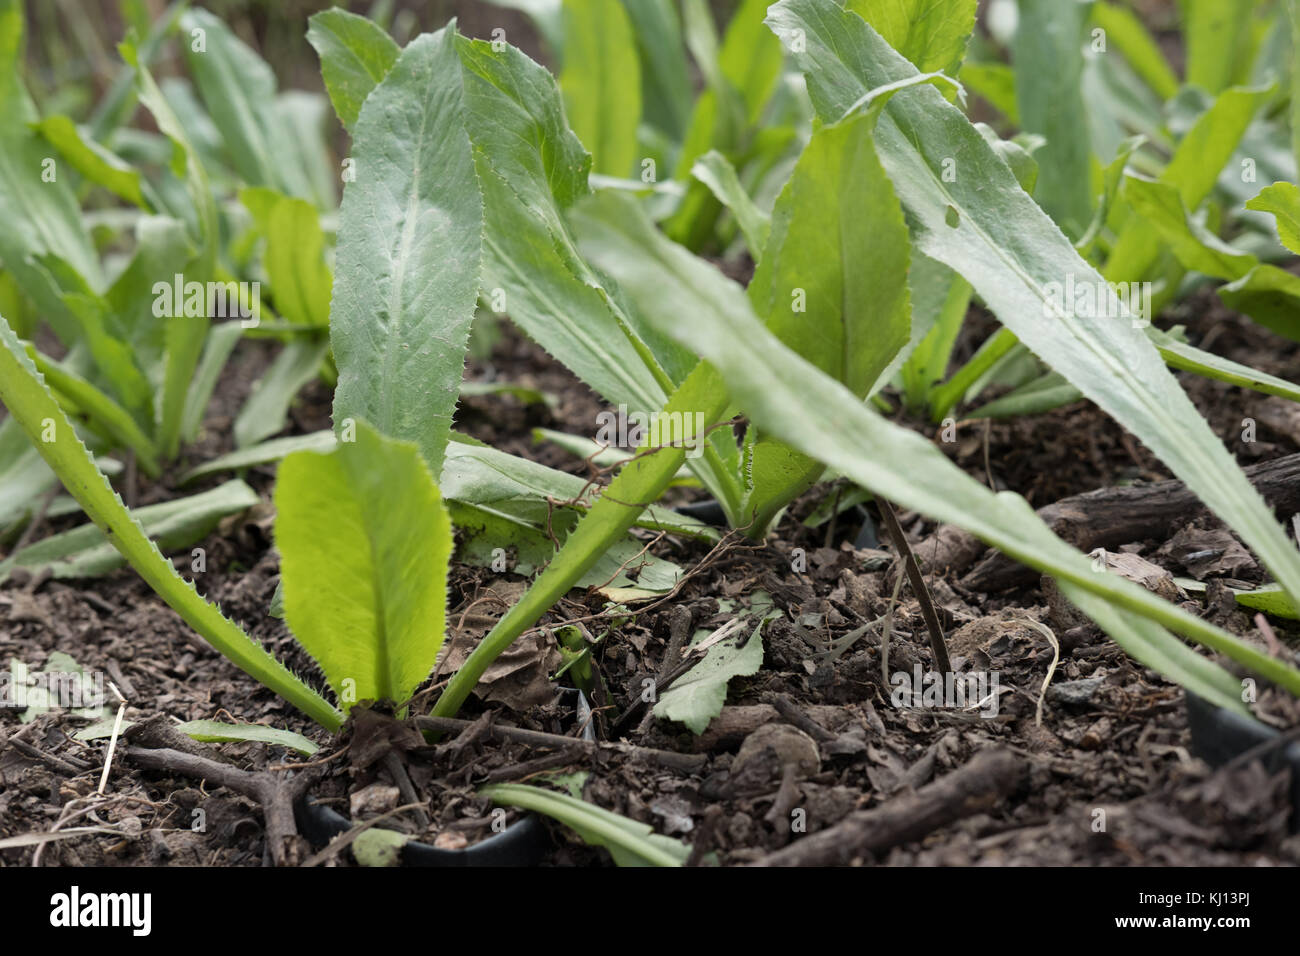 Fresca culantro organico, a denti di sega di coriandolo, prezzemolo in crescita su terreno in fattoria Foto Stock